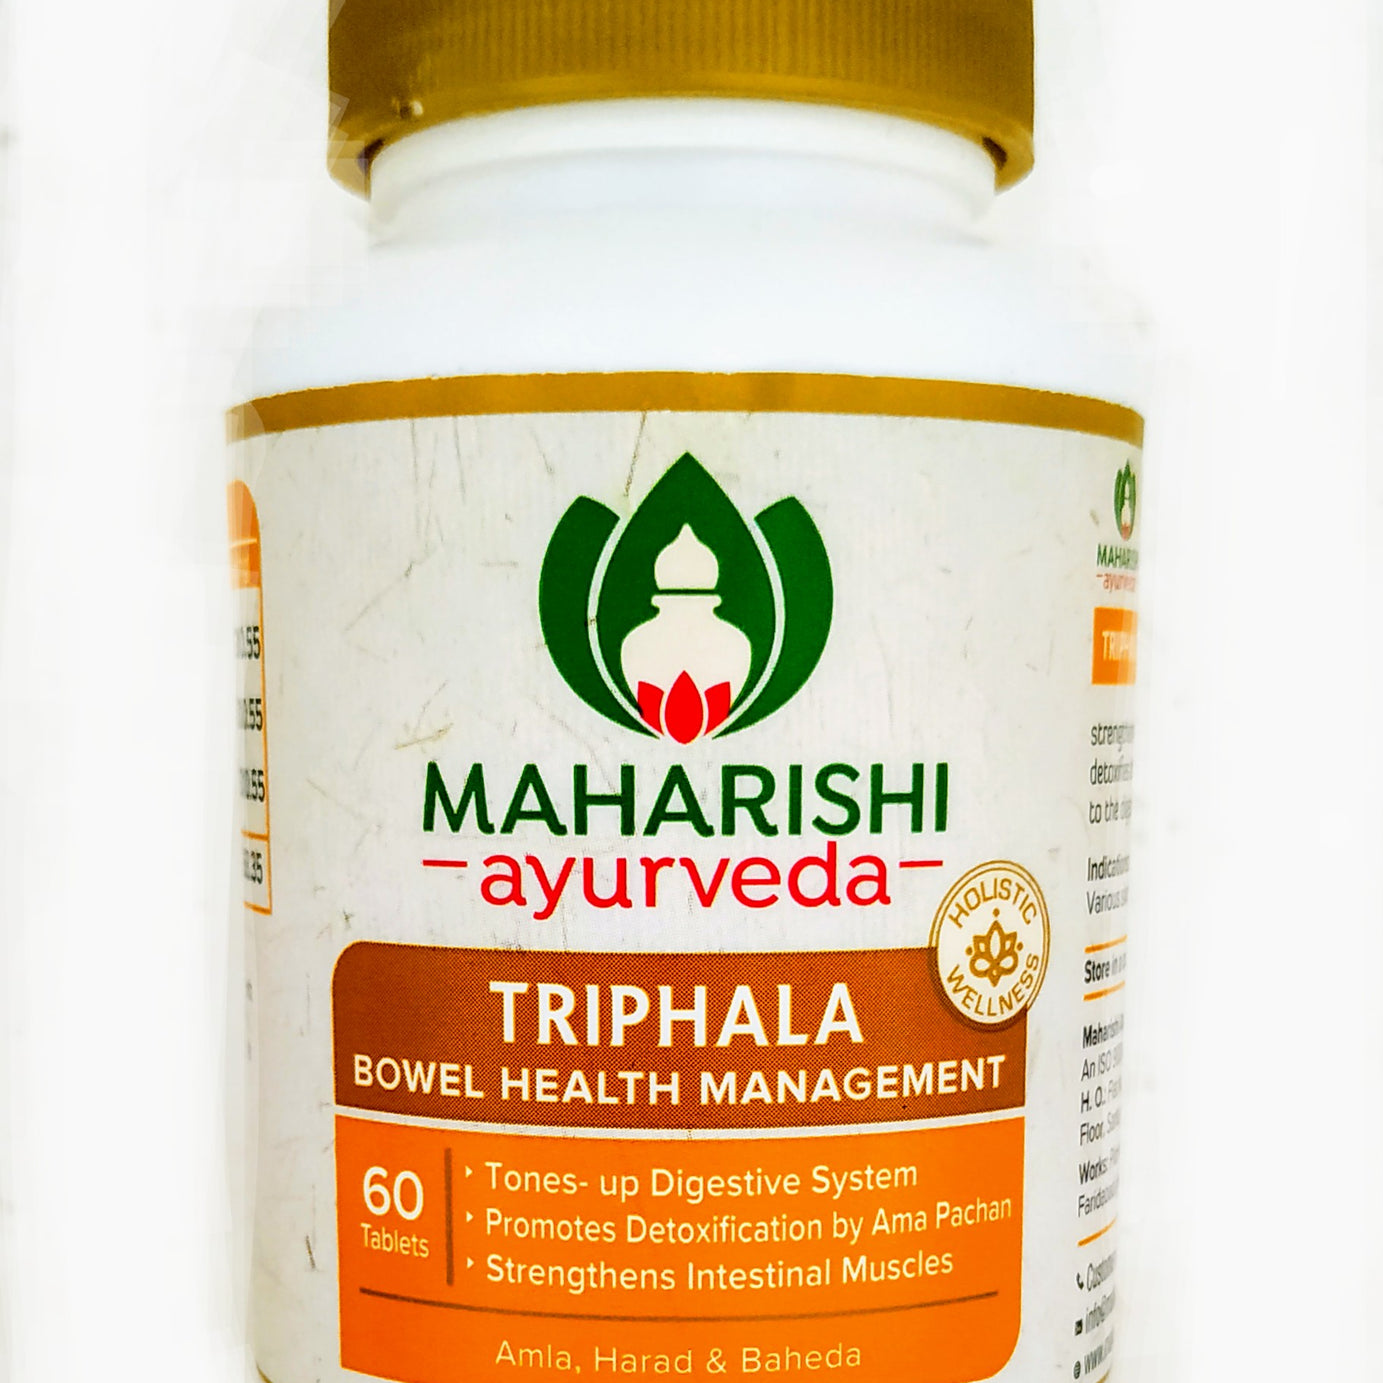 Shop Maharishi Triphala 60 Tablets at price 110.00 from Maharishi Ayurveda Online - Ayush Care